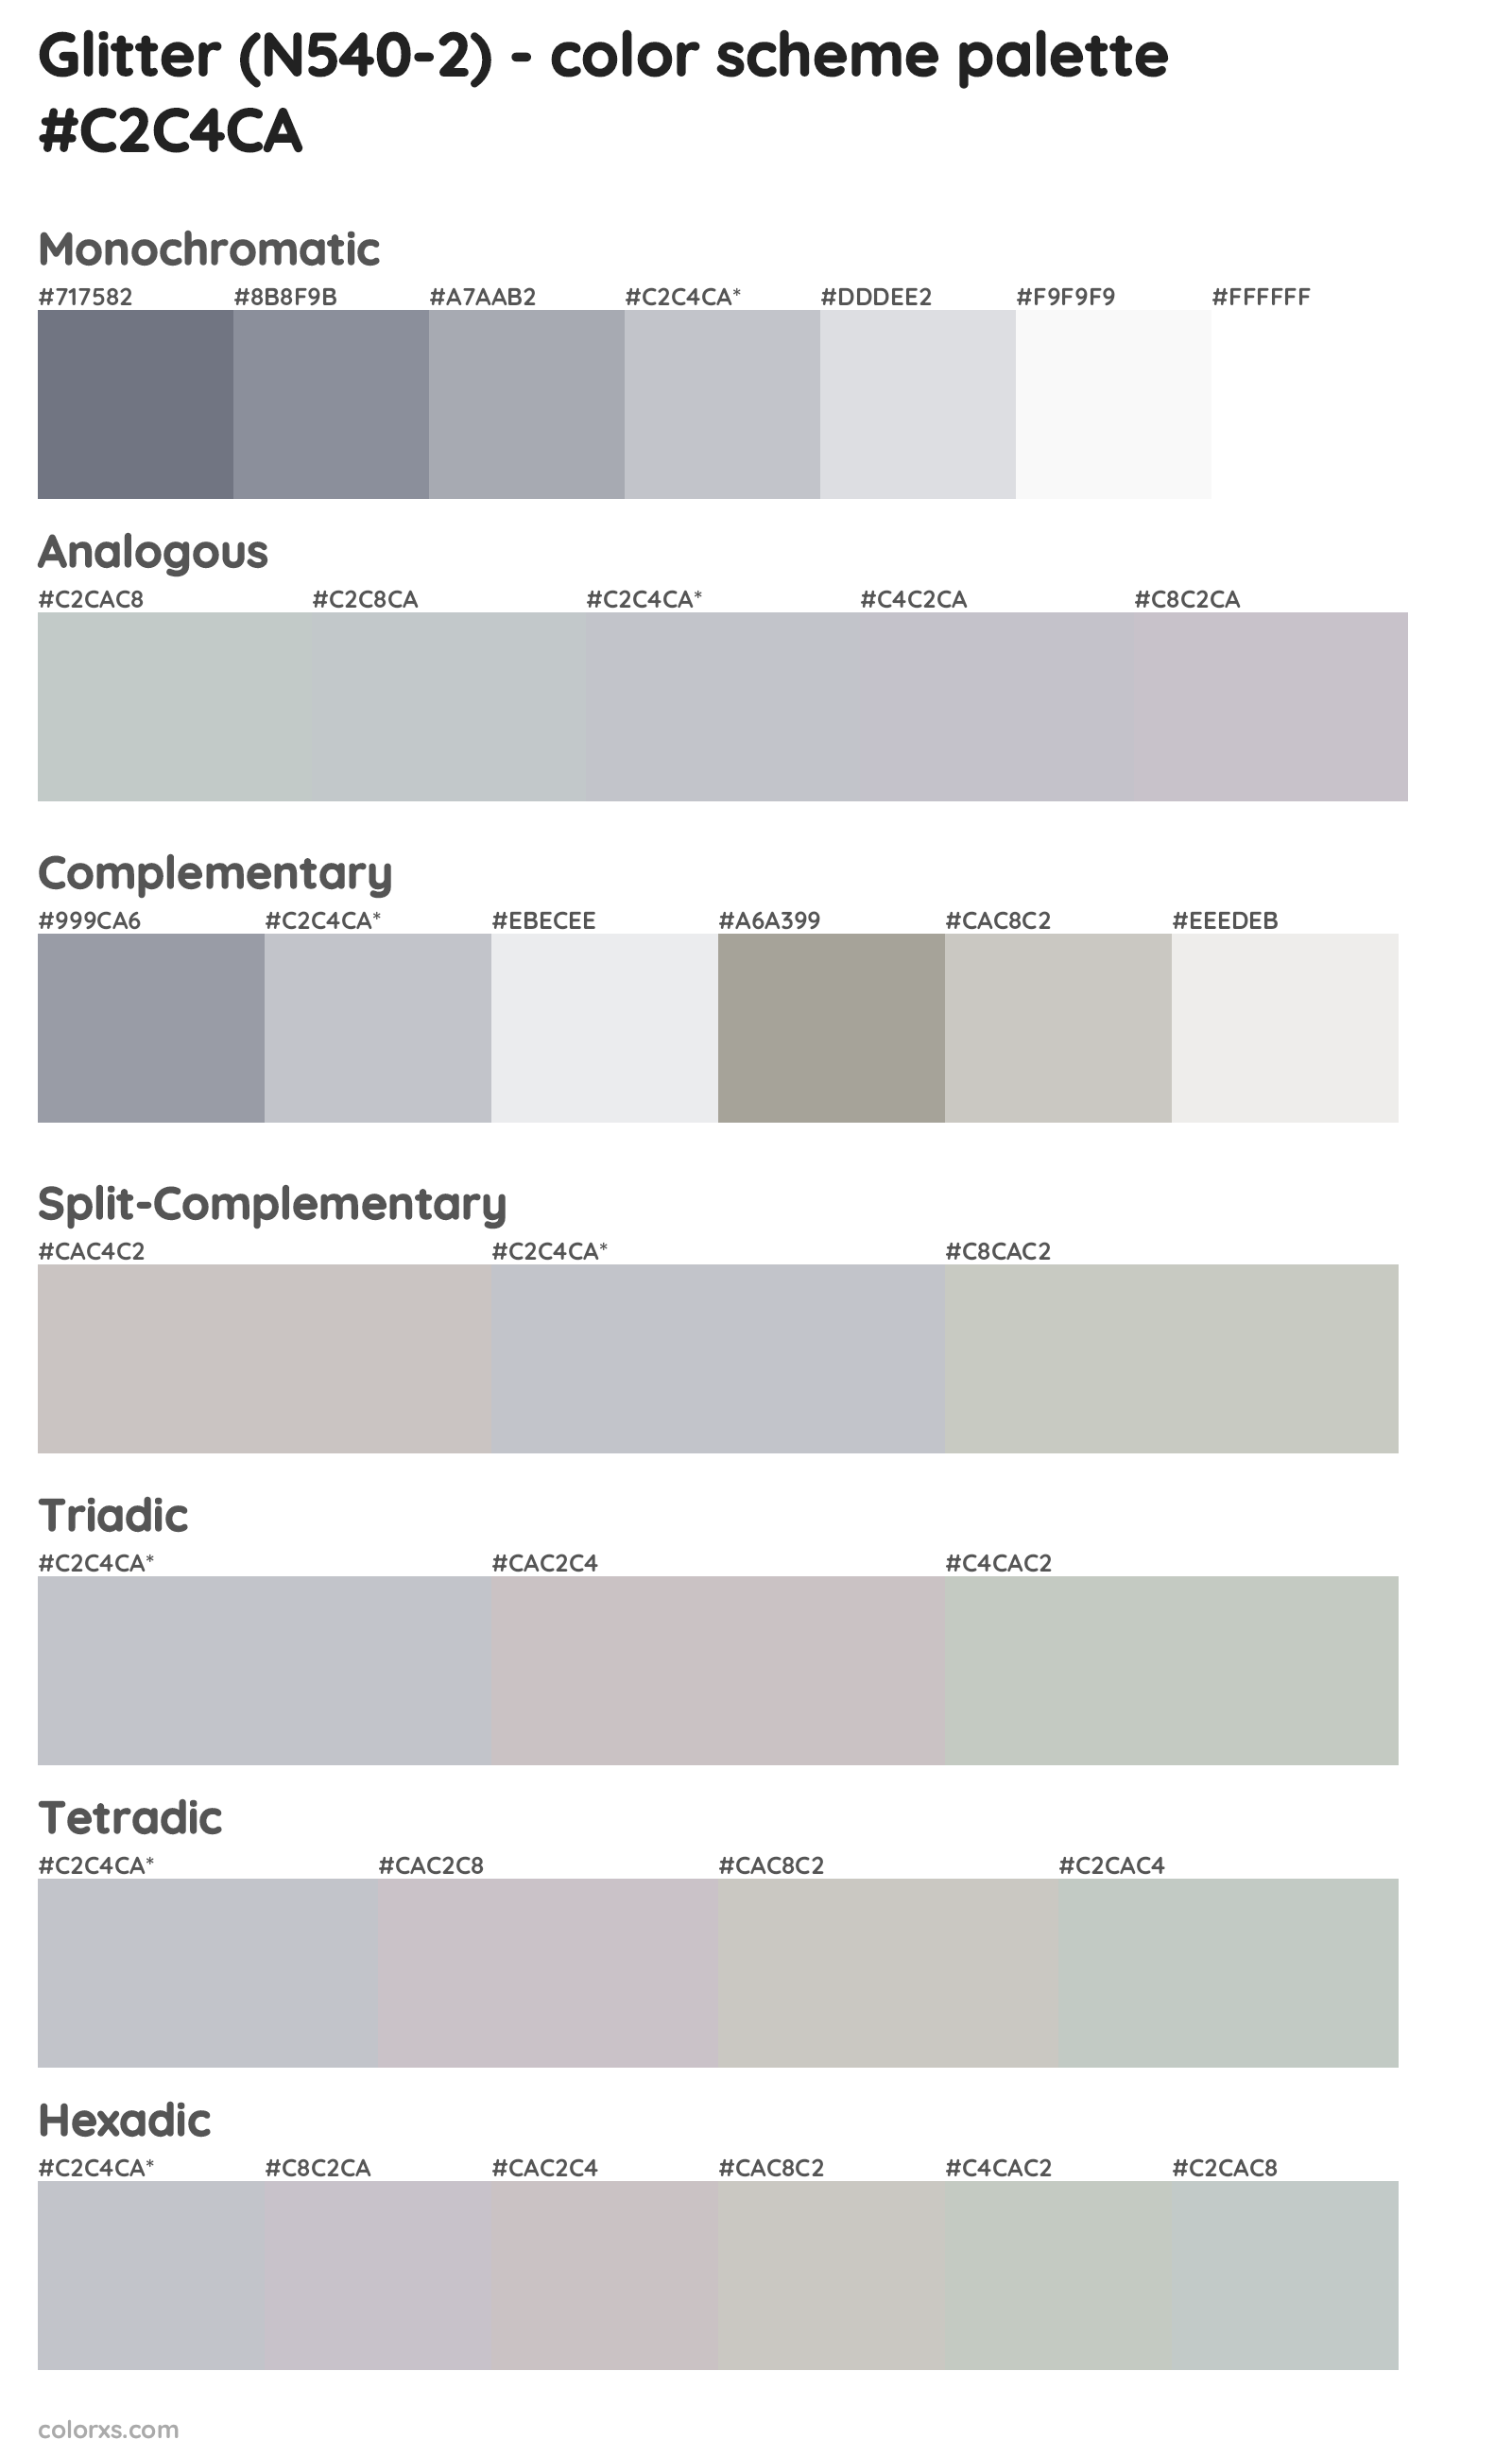 Glitter (N540-2) Color Scheme Palettes